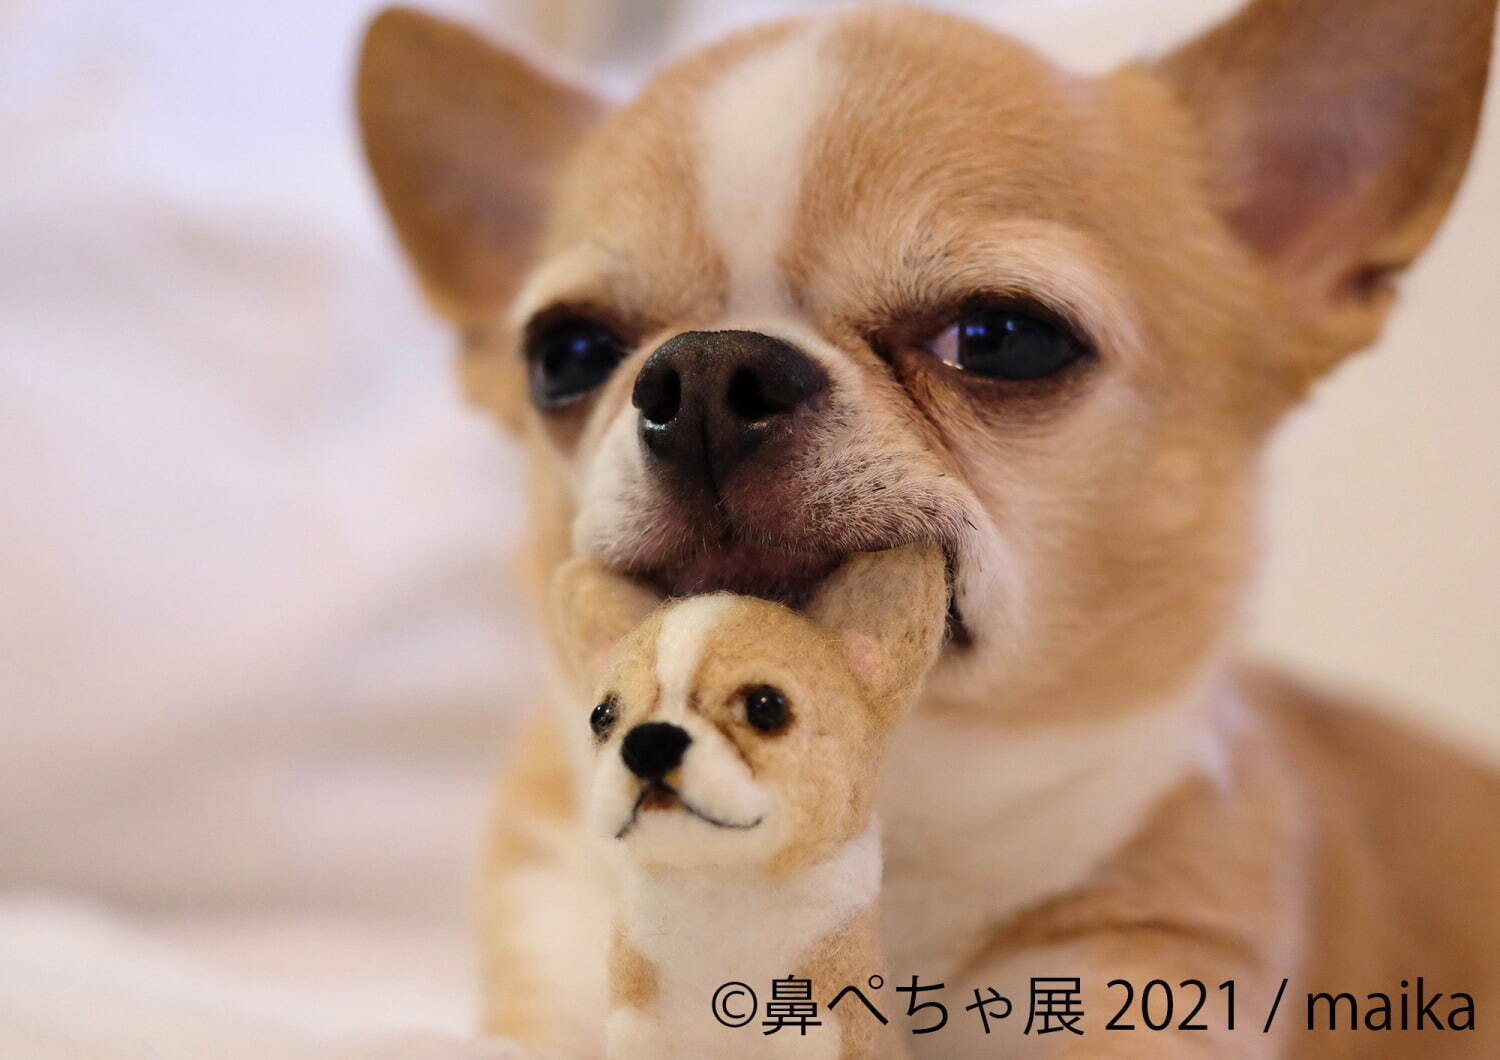 鼻ぺちゃ犬 の合同写真展 物販展が調布パルコで ぶひ可愛い 犬作品やグッズ集結 ファッションプレス